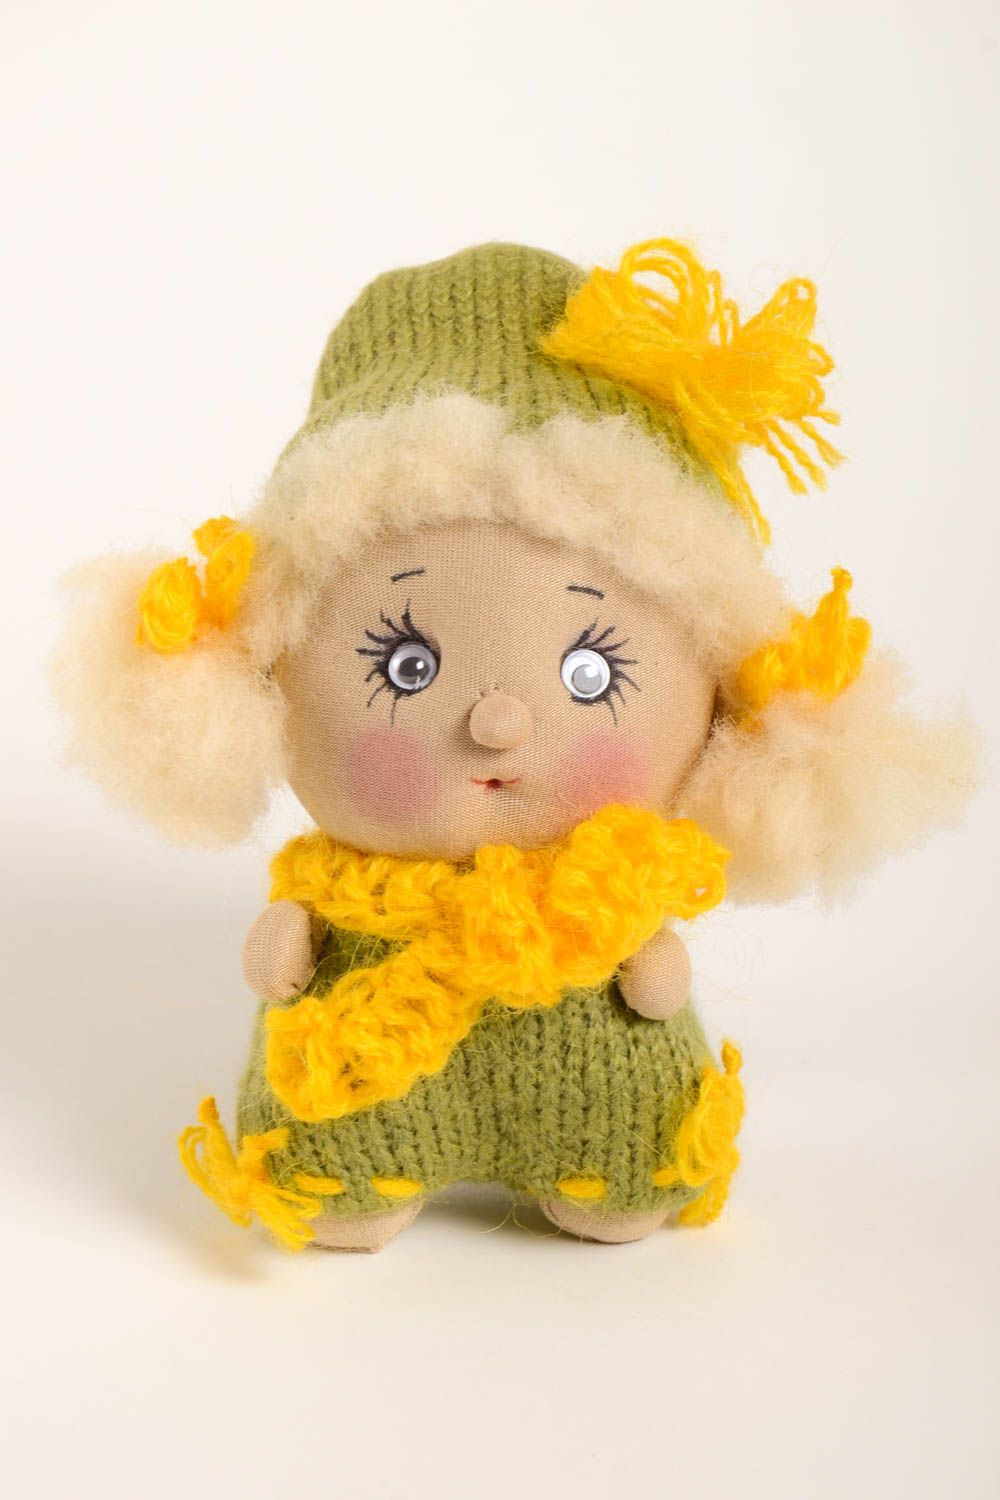 Puppe handgemacht Baby Stoffpuppe Spielzeug Geschenk Künstler Puppe hübsch foto 2